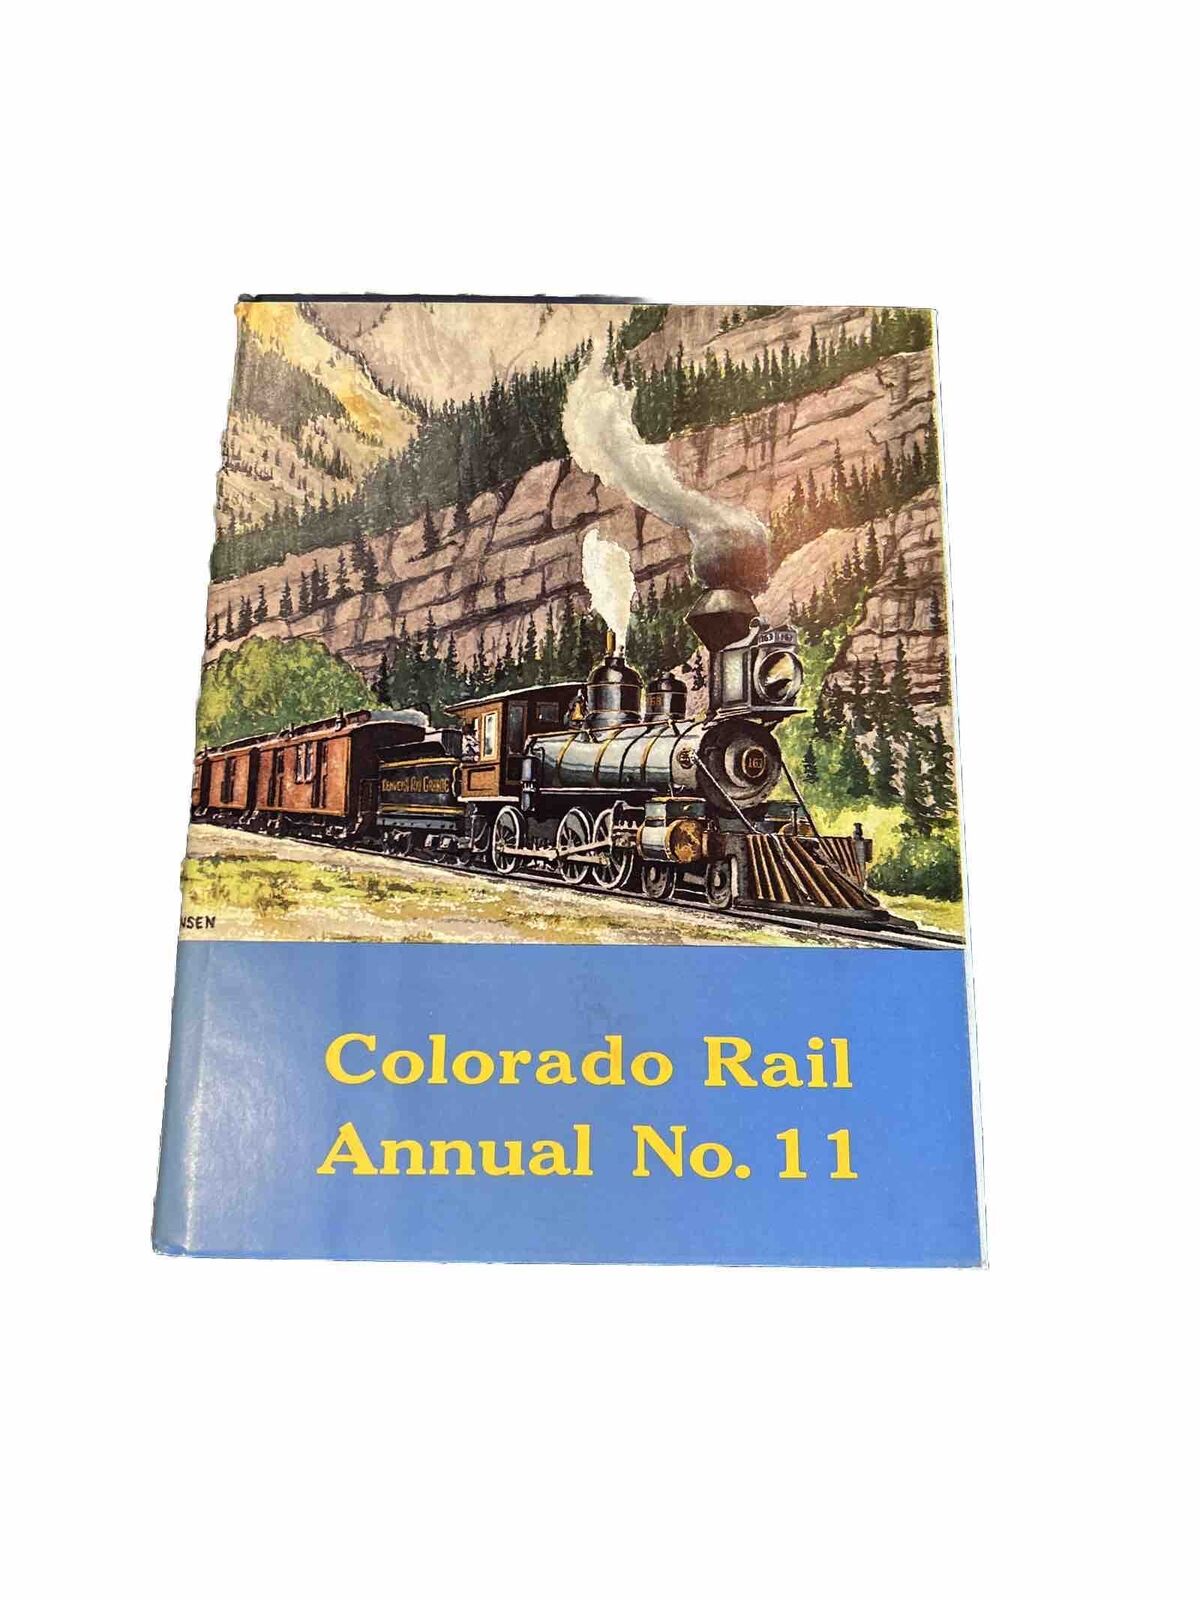 Colorado Rail Annual No. 11 by Colorado Railroad Museum - 1973 Hard Copy in DJ